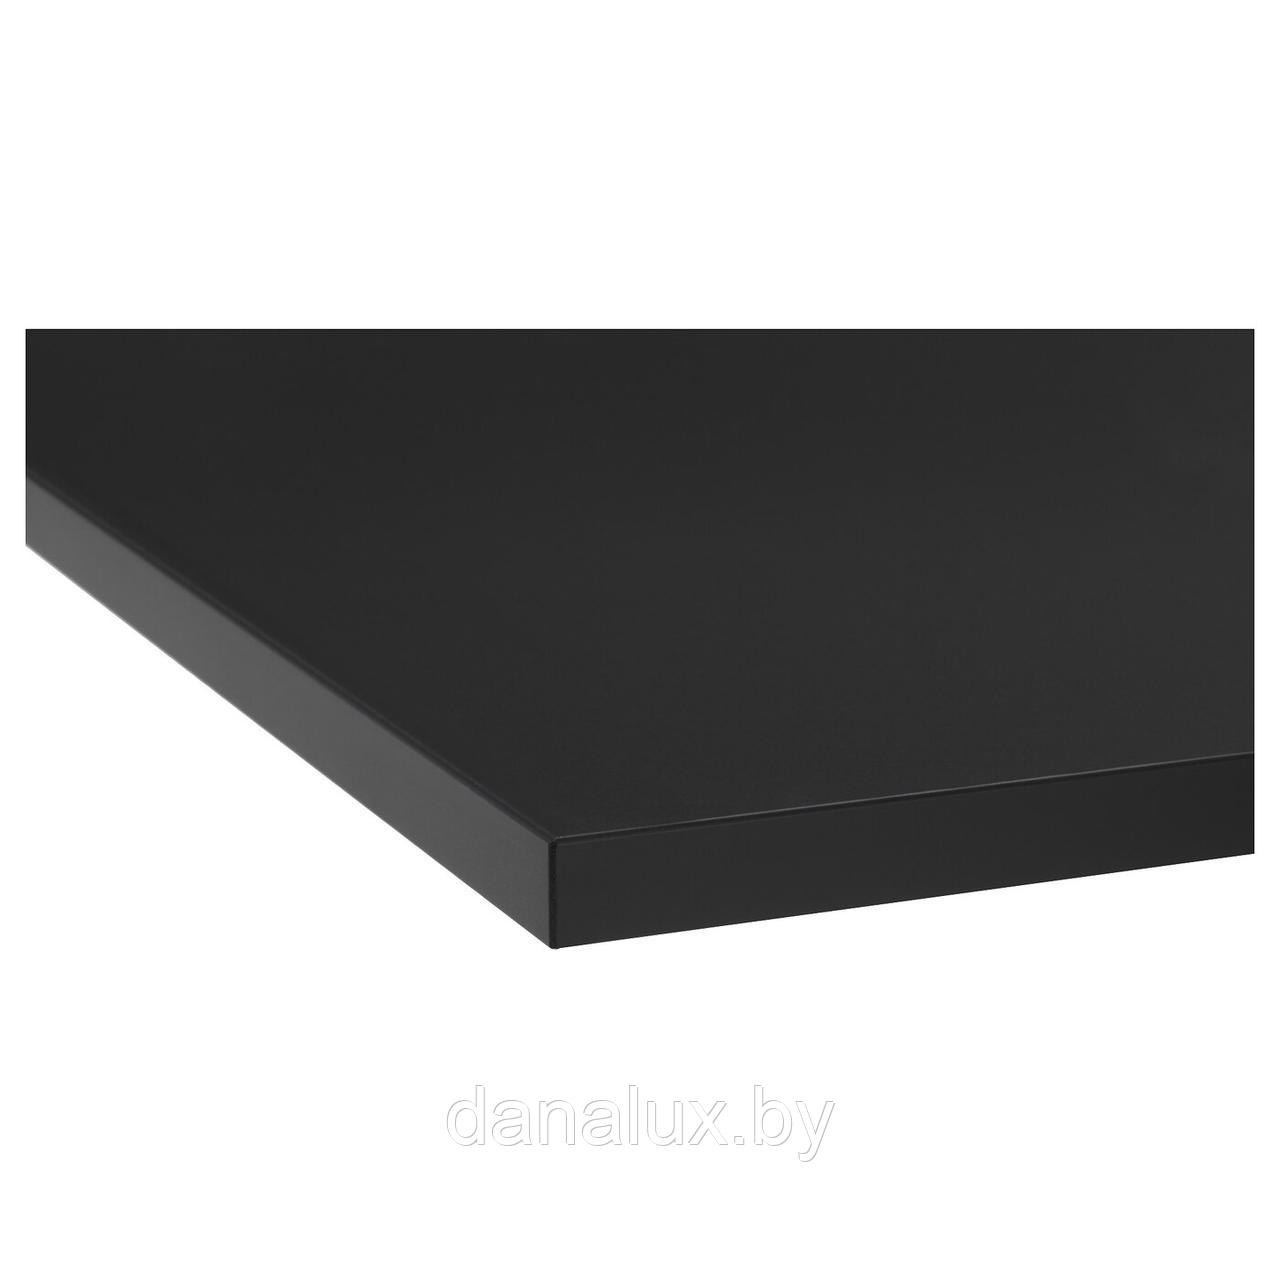 Столешница Дана Топ постформинг цвет черный 120 см + влагостойкий лак